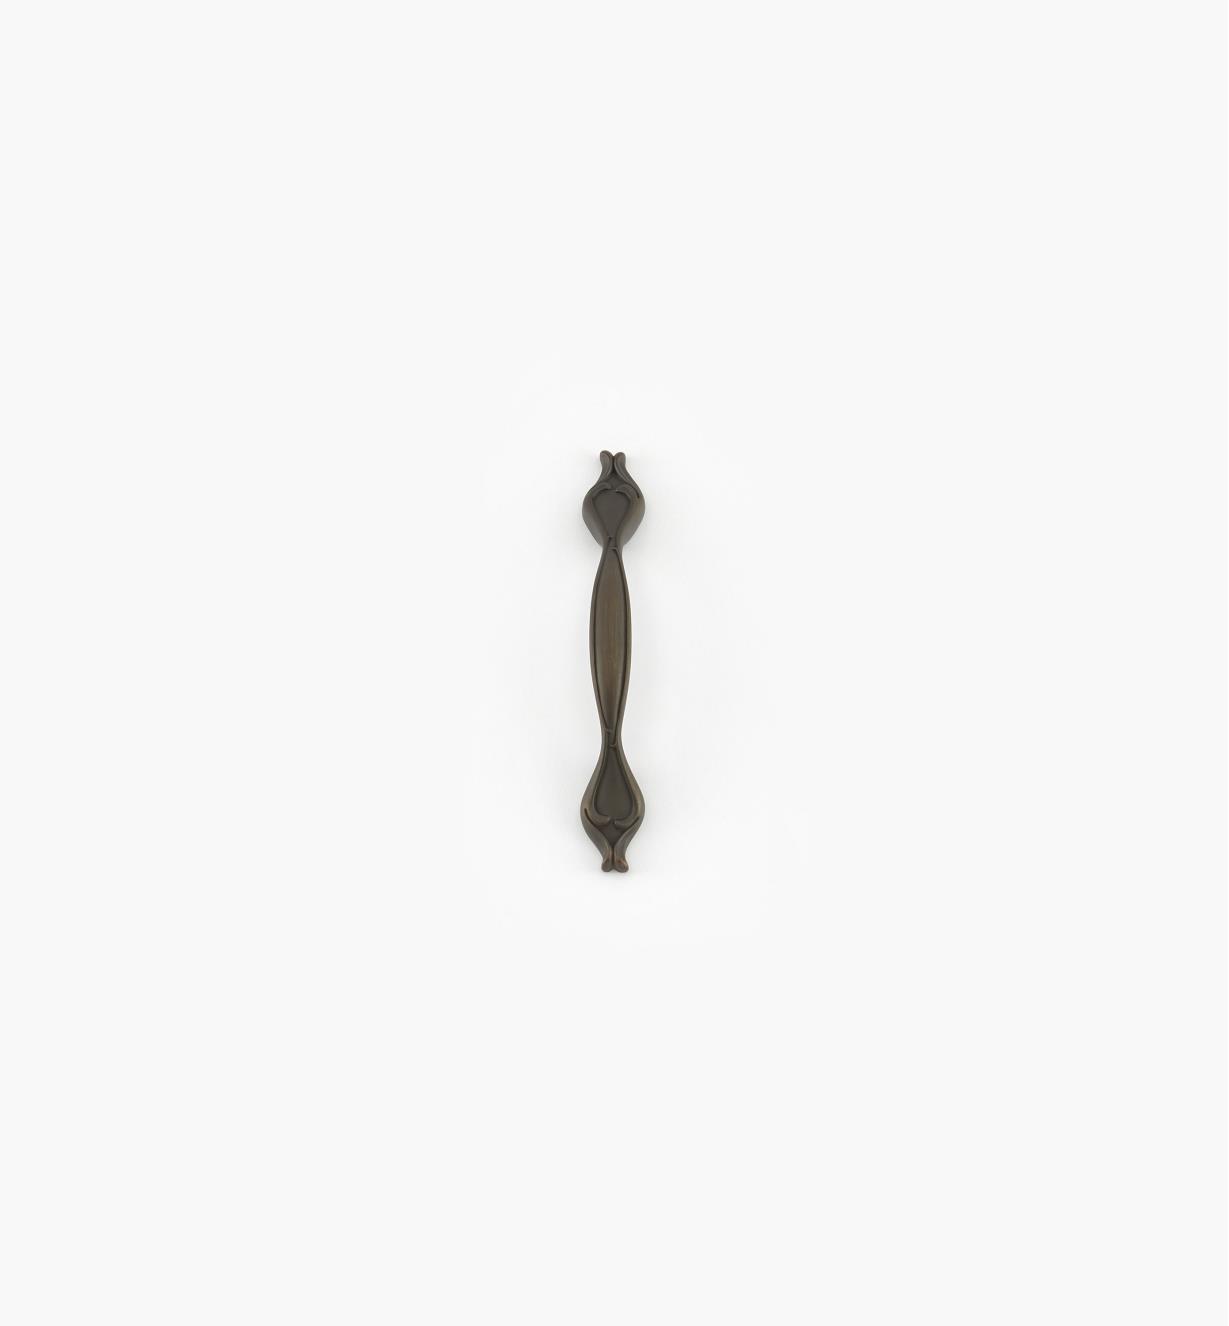 02A5254 - Poignée fixe de 96 mm (6 1/2 po), série French Farm, fini bronze antique